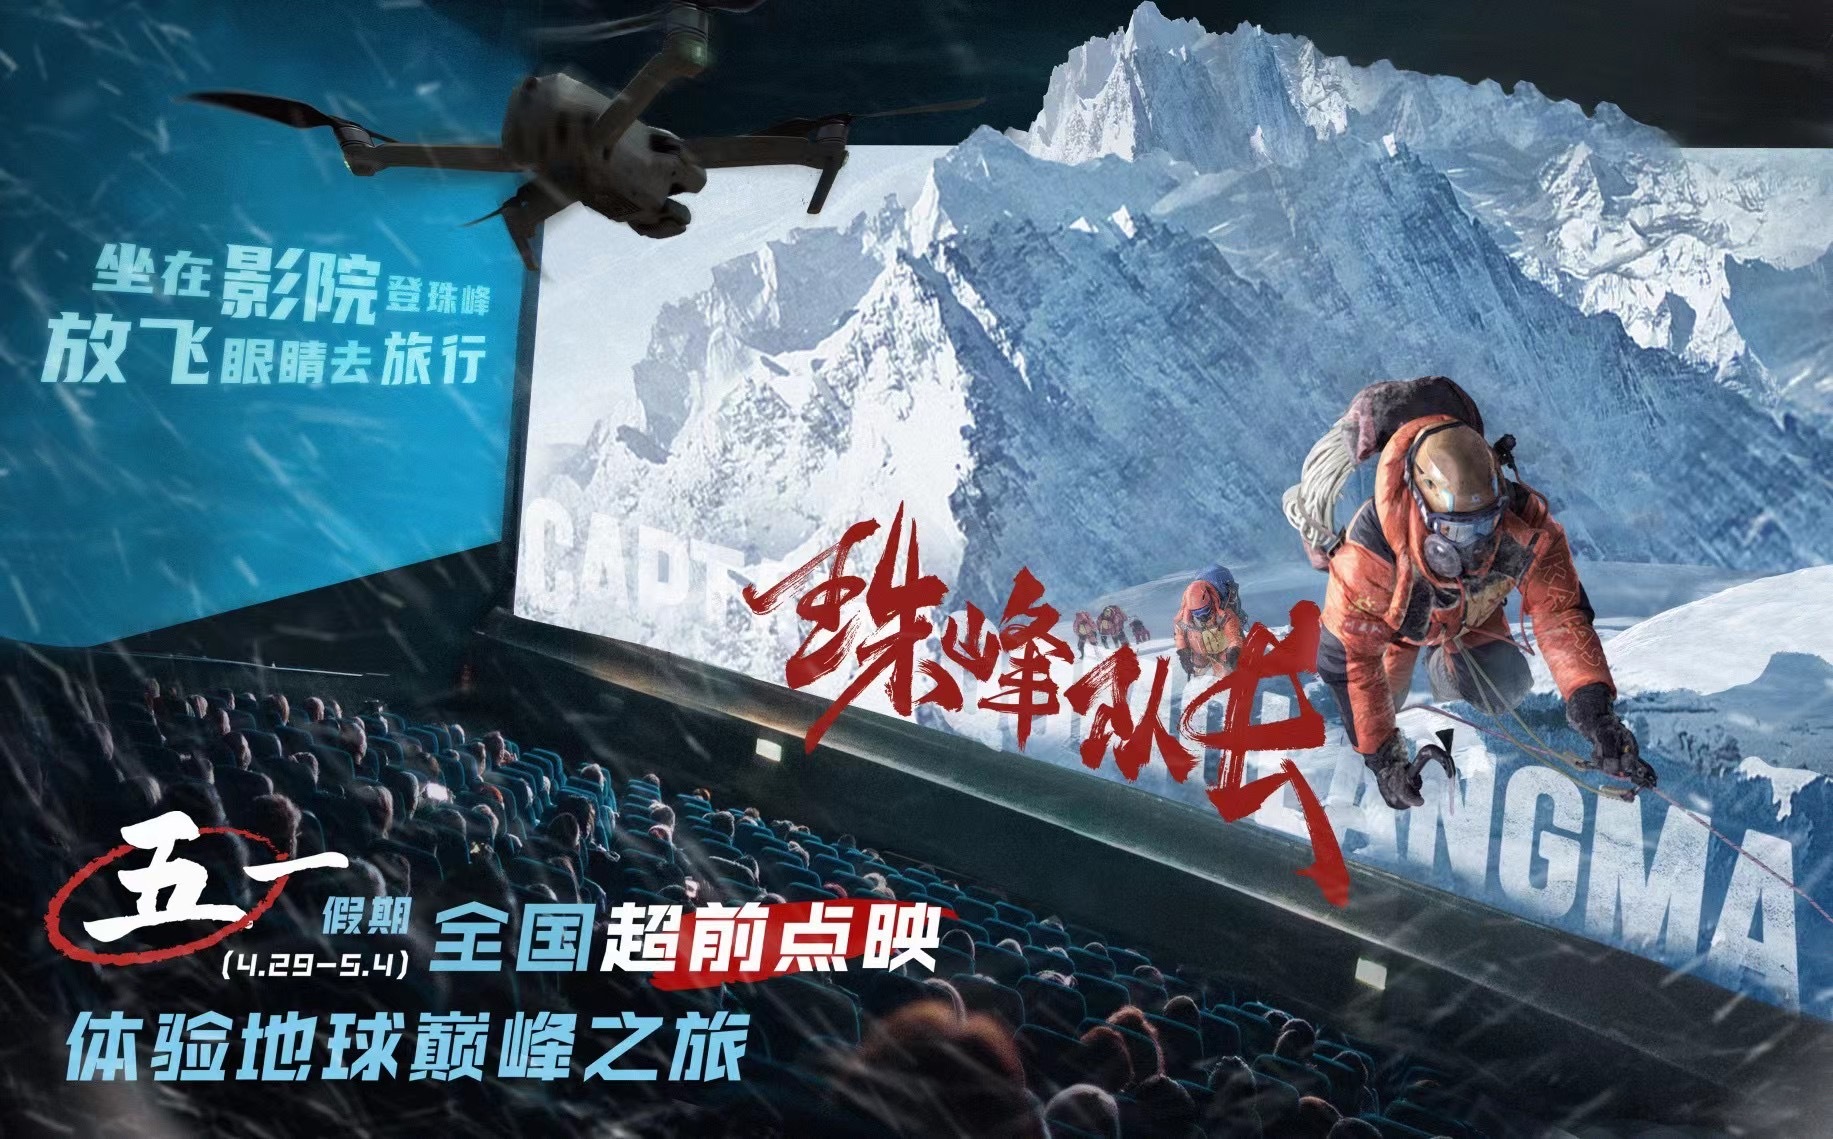 电影《珠峰队长》官宣4月29日 - 5月4日进行全国大规模超前点映